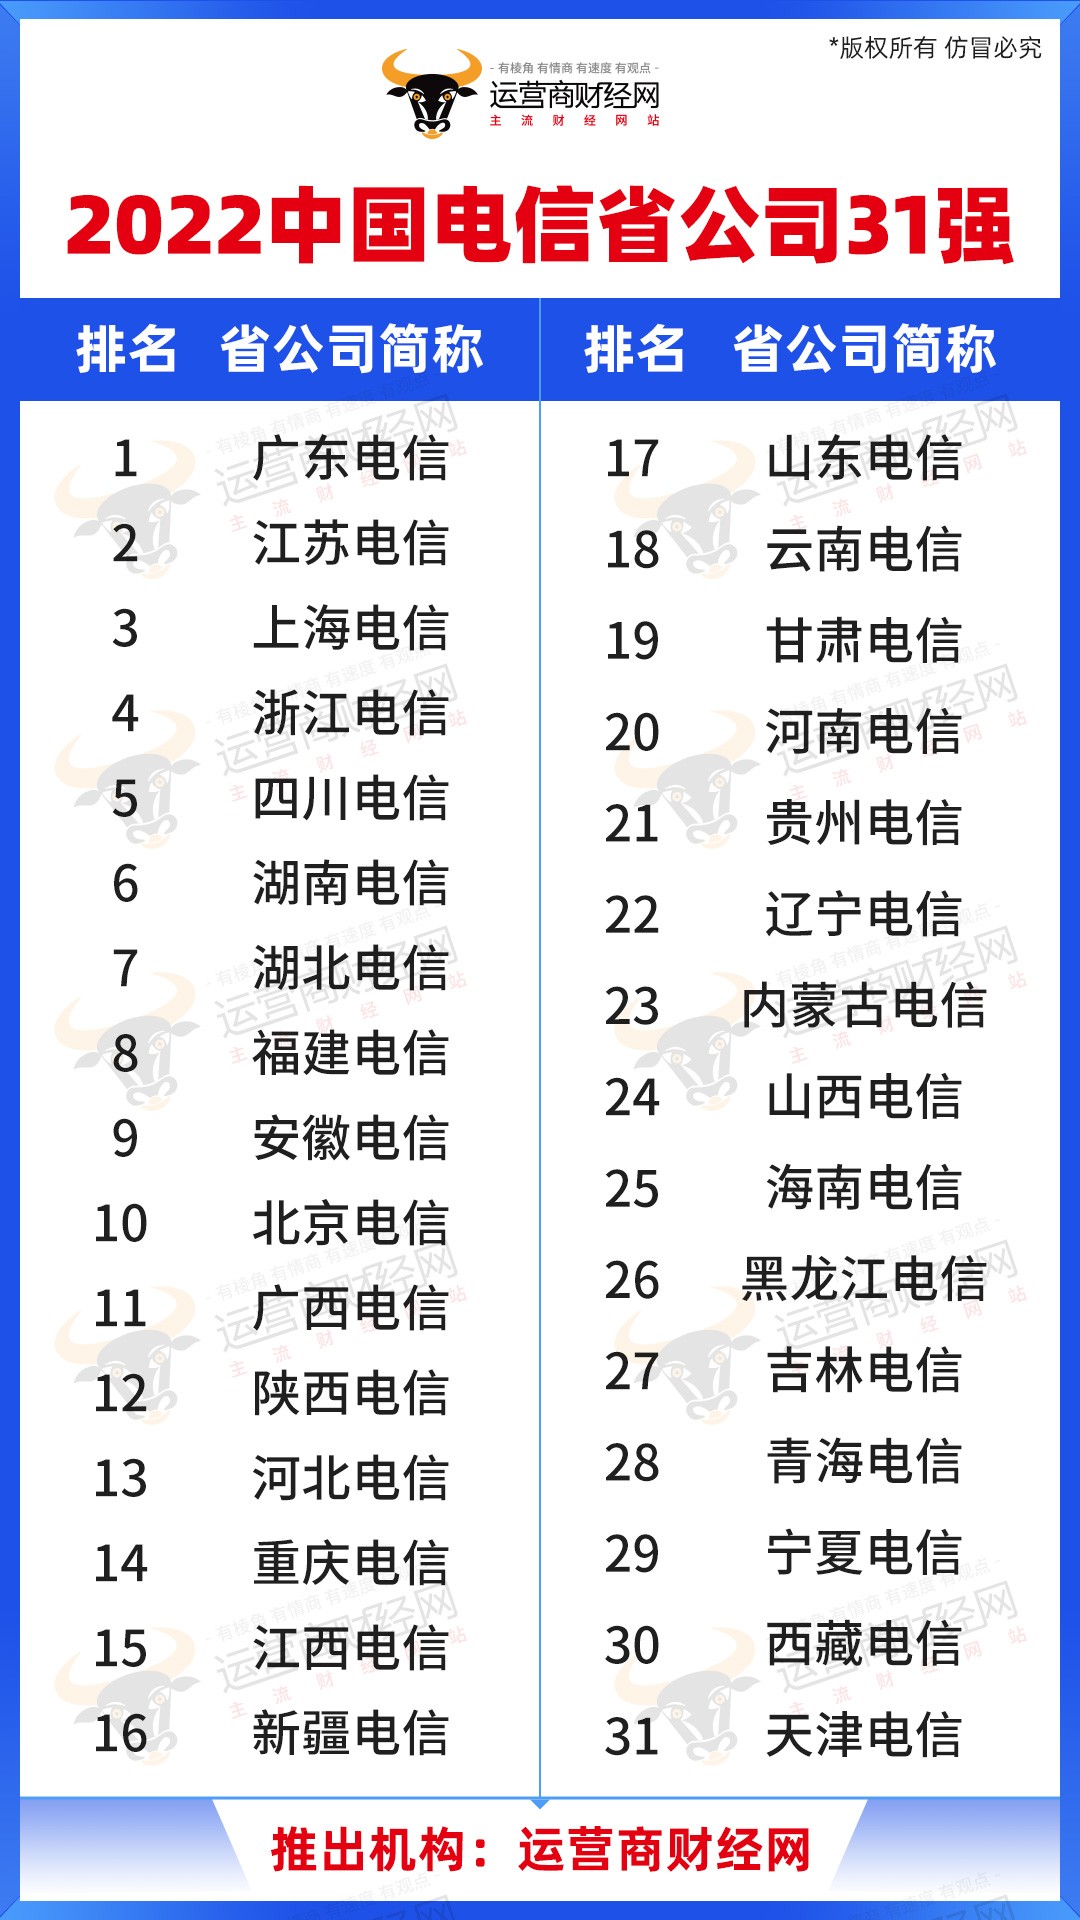 运营商财经网公布“2022中国电信省公司31强” 这是业界首个类似榜单